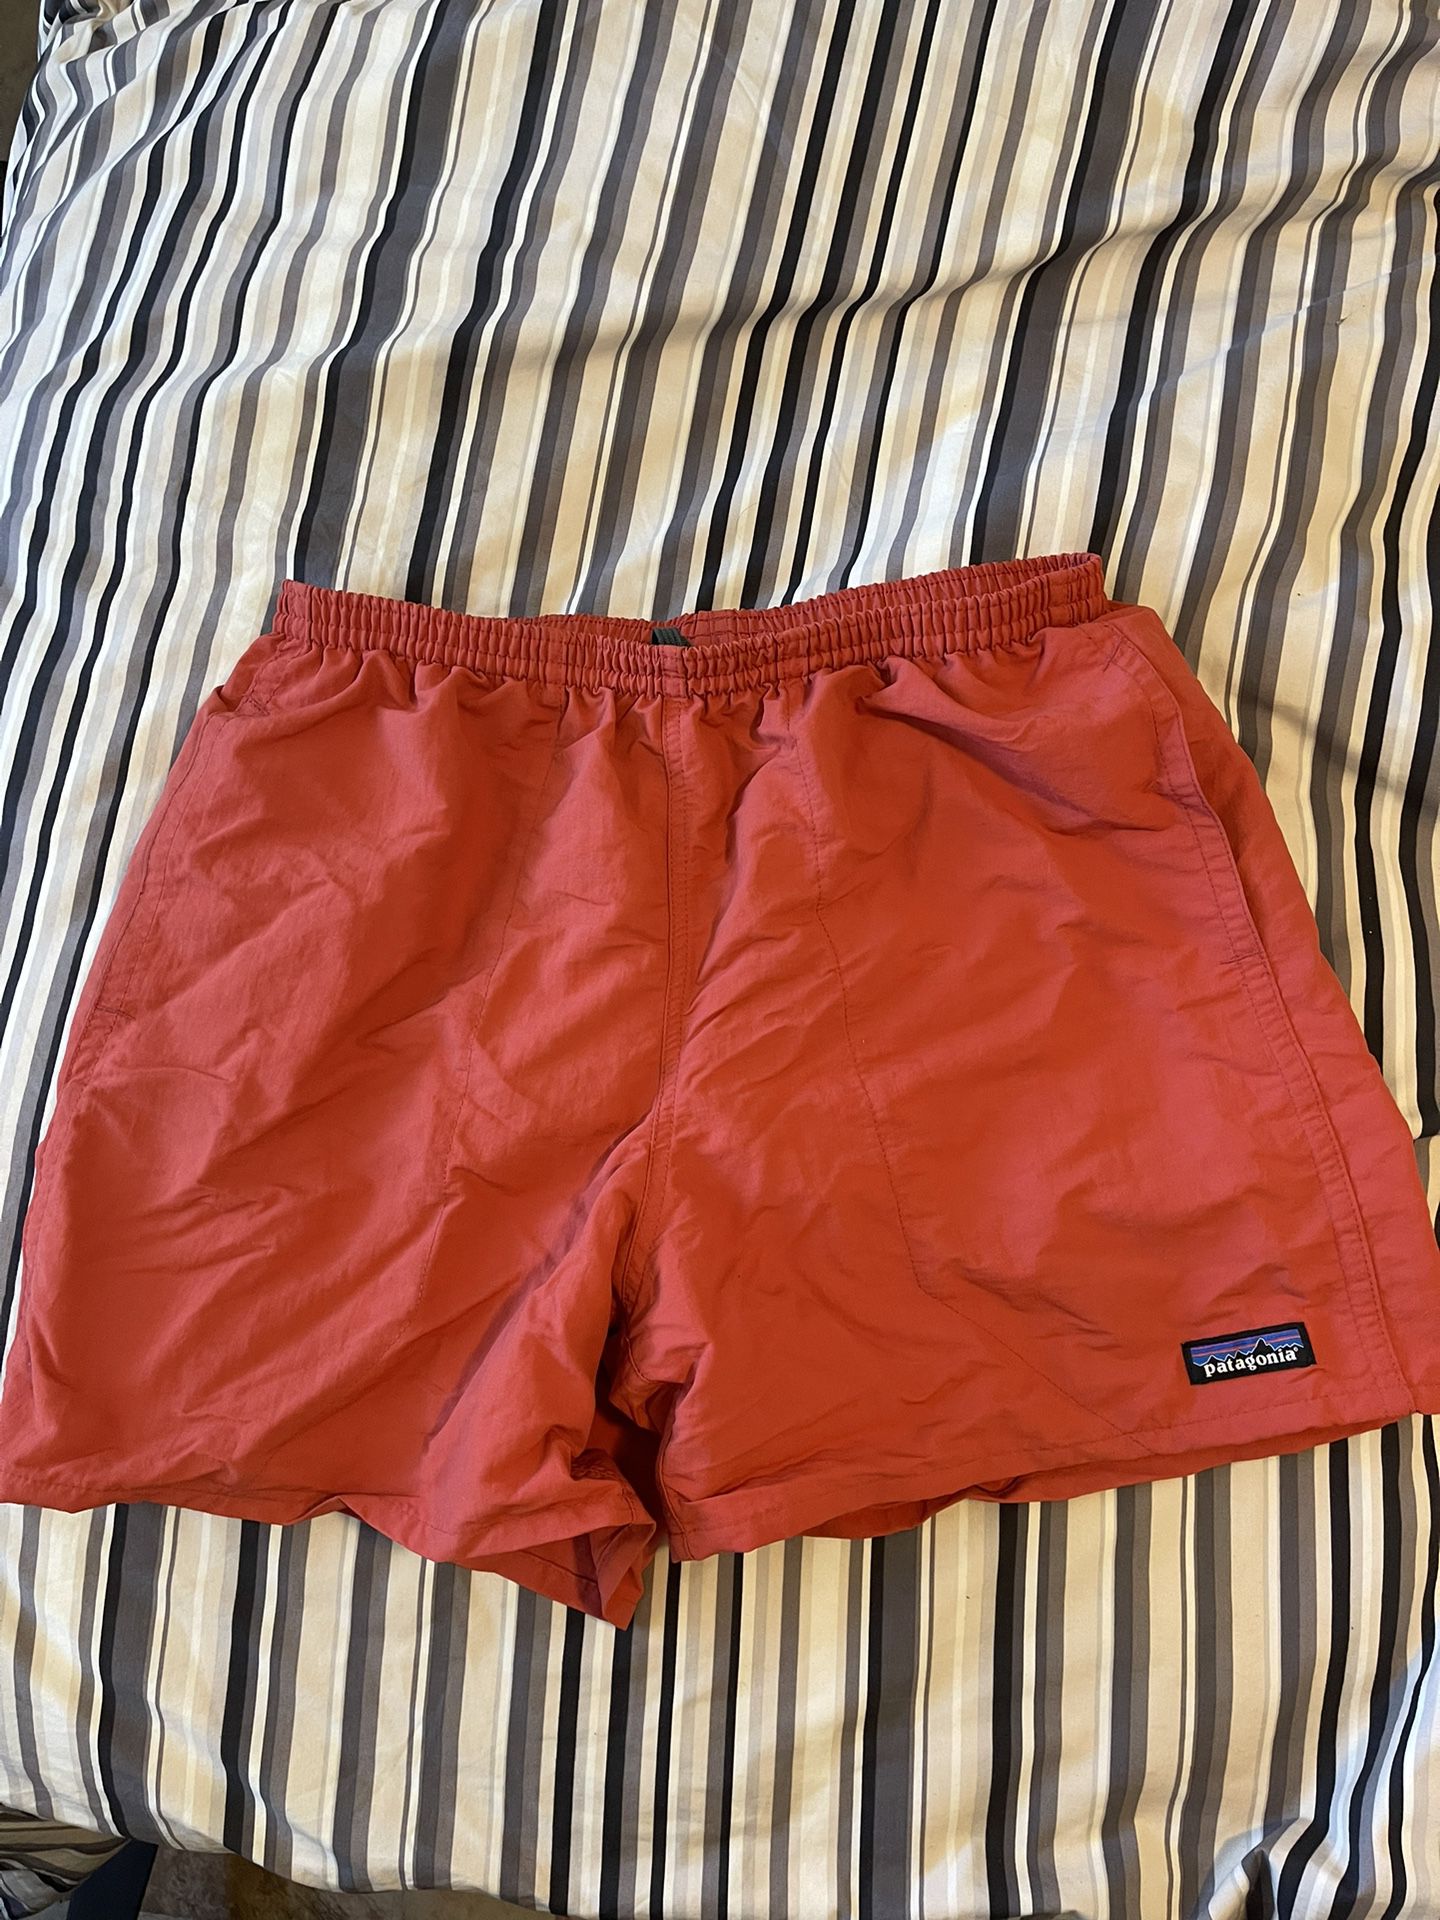 Patagonia Men’s Baggies Shorts - 5” Size: M